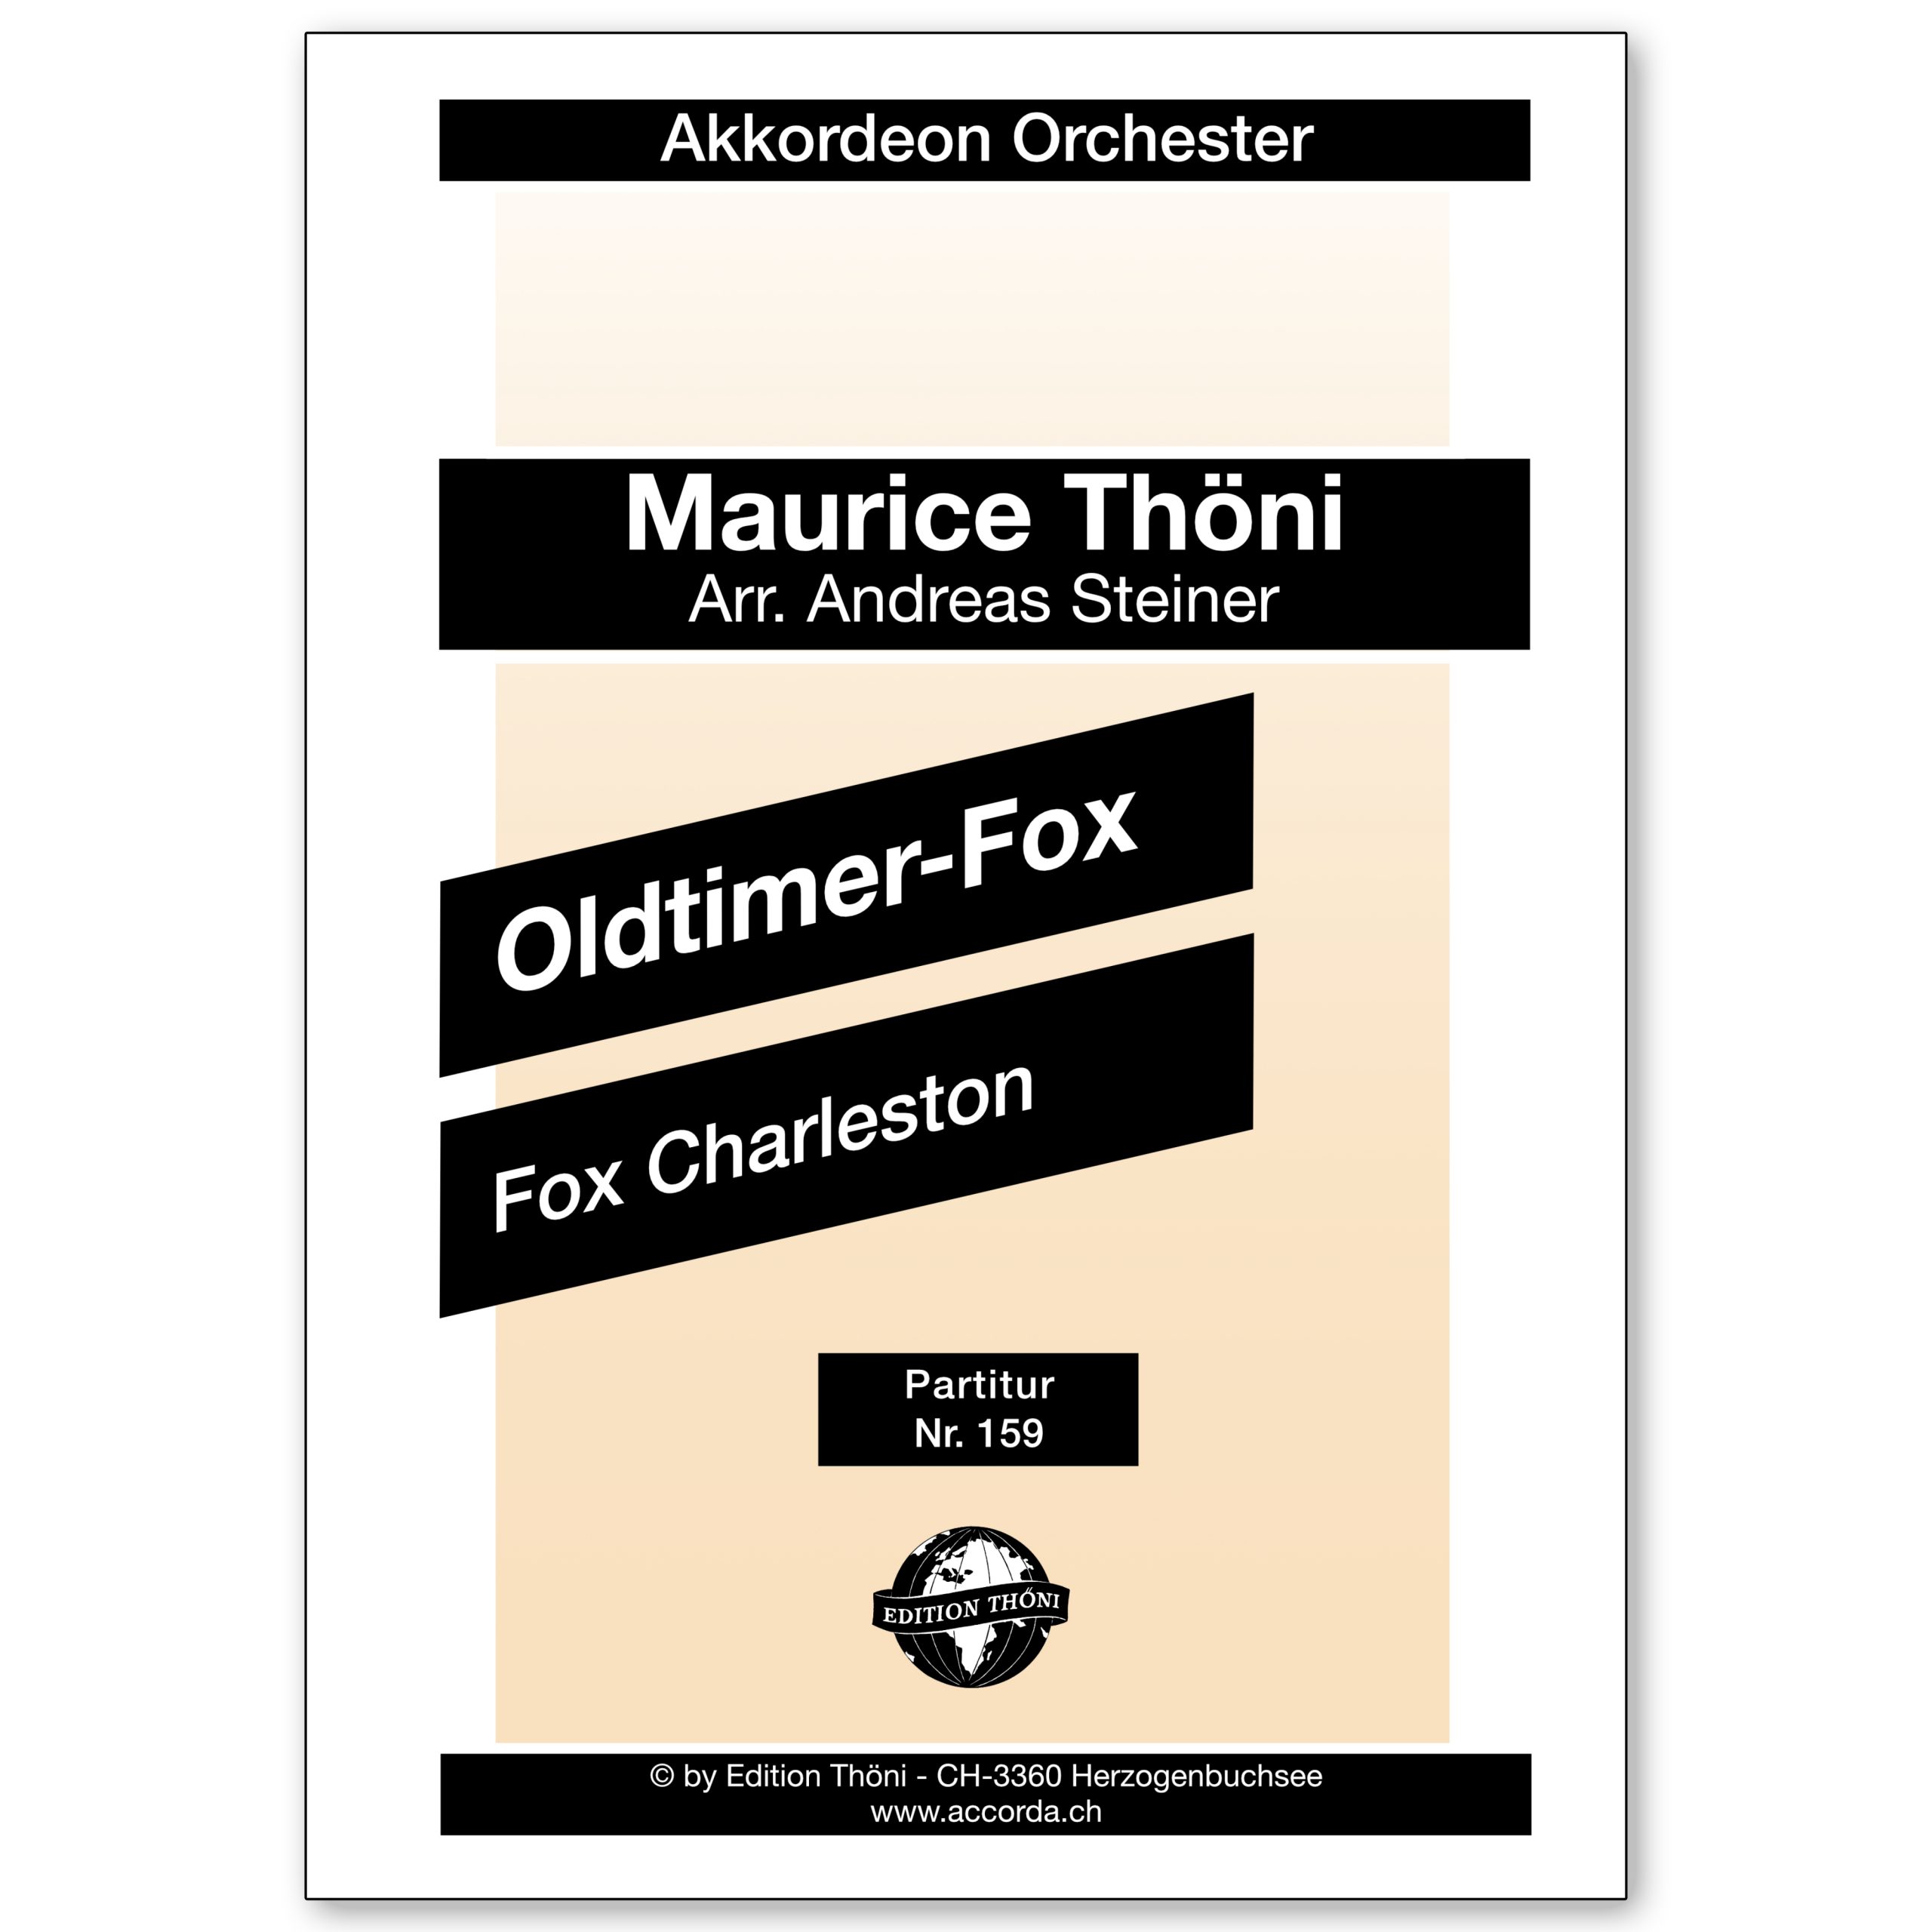 Oldtimer-Fox